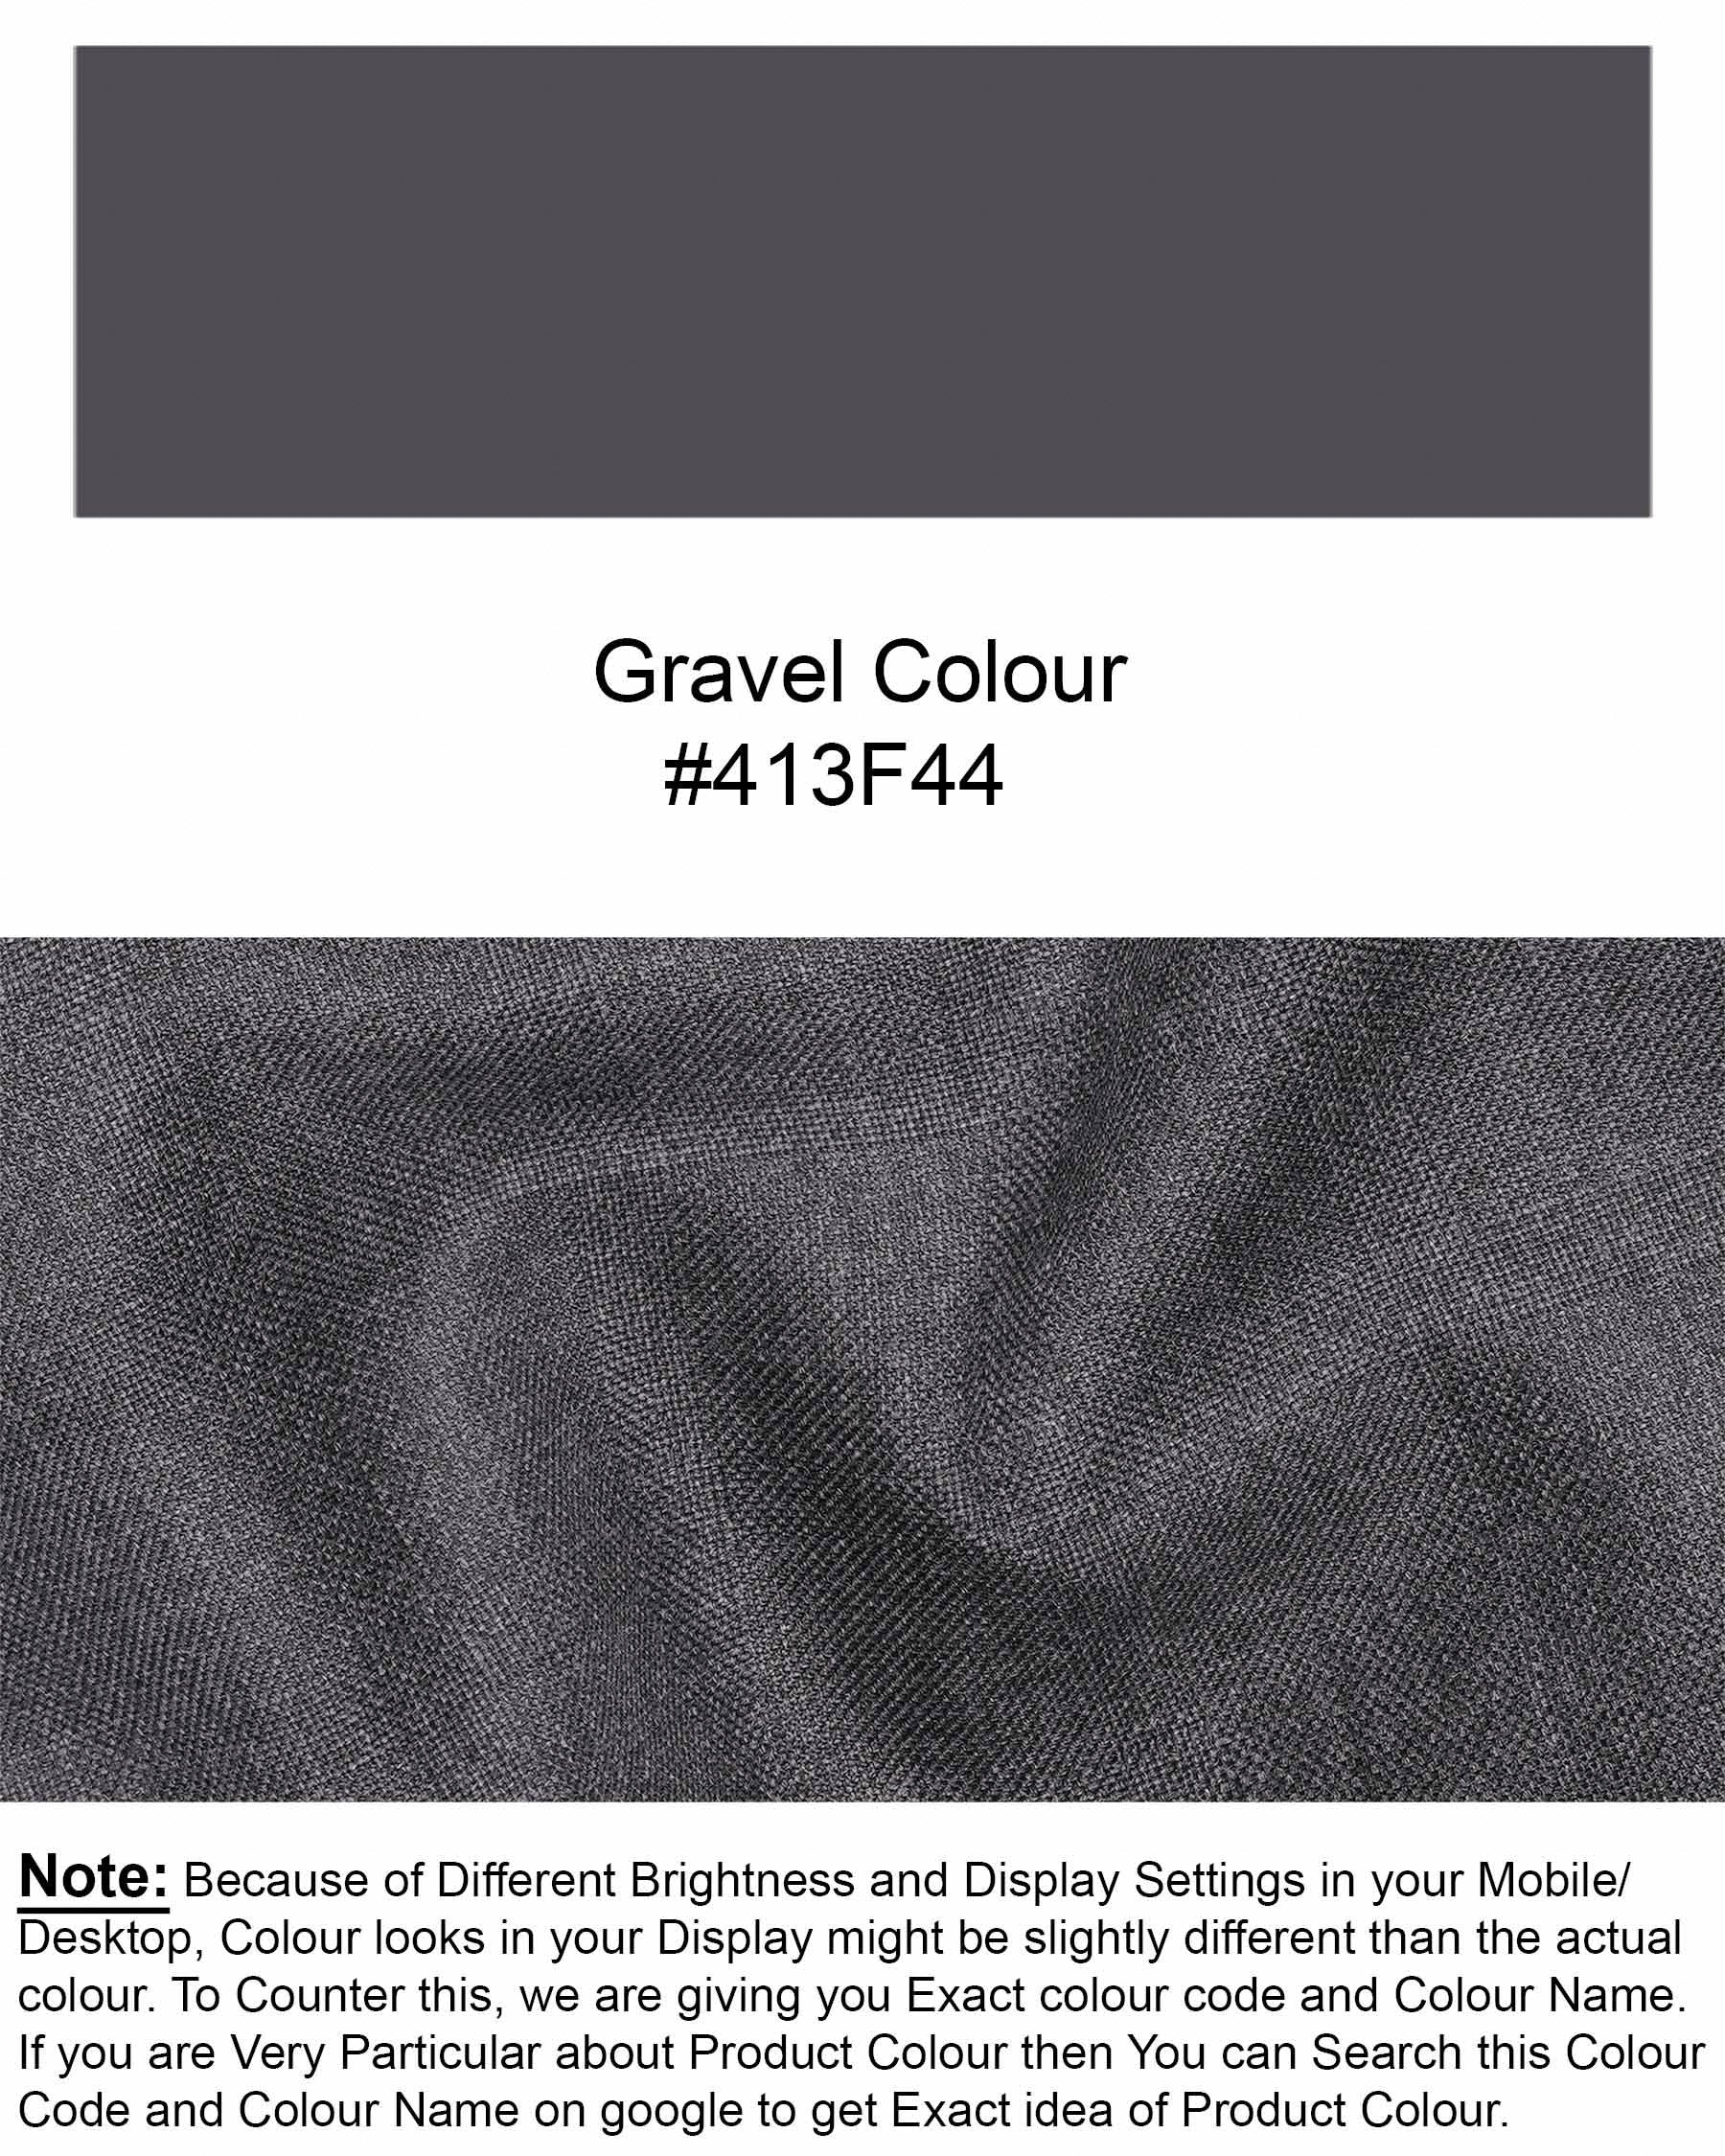 Gravel Gray Textured Waistcoat V1917-36, V1917-38, V1917-40, V1917-42, V1917-44, V1917-46, V1917-48, V1917-50, V1917-52, V1917-54, V1917-56, V1917-58, V1917-60